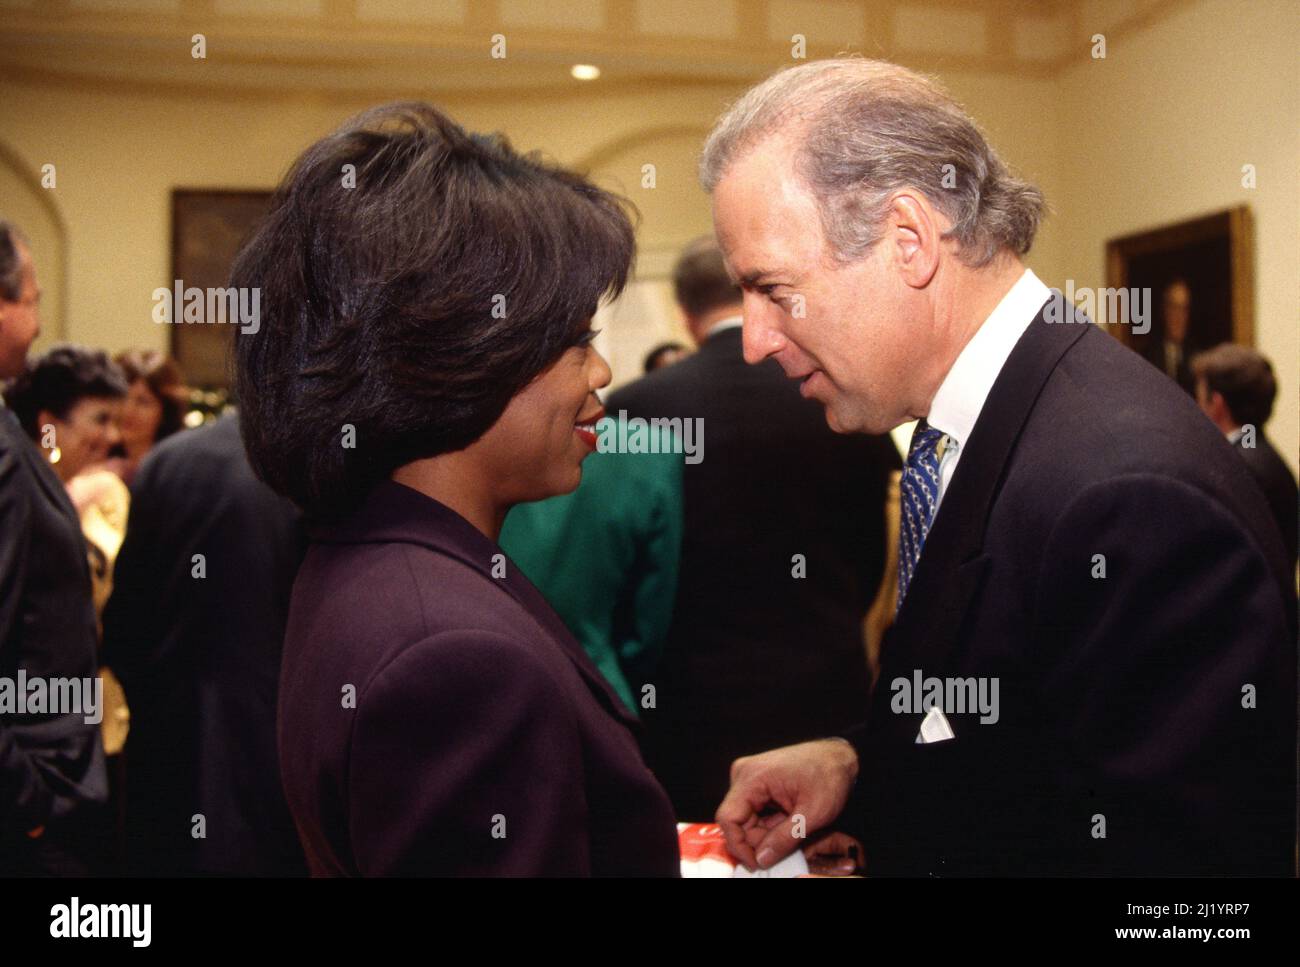 Il senatore Joseph Biden (L) parla con l'ospite del talkshow Oprah Winfrey a Washington, DC. Foto Stock